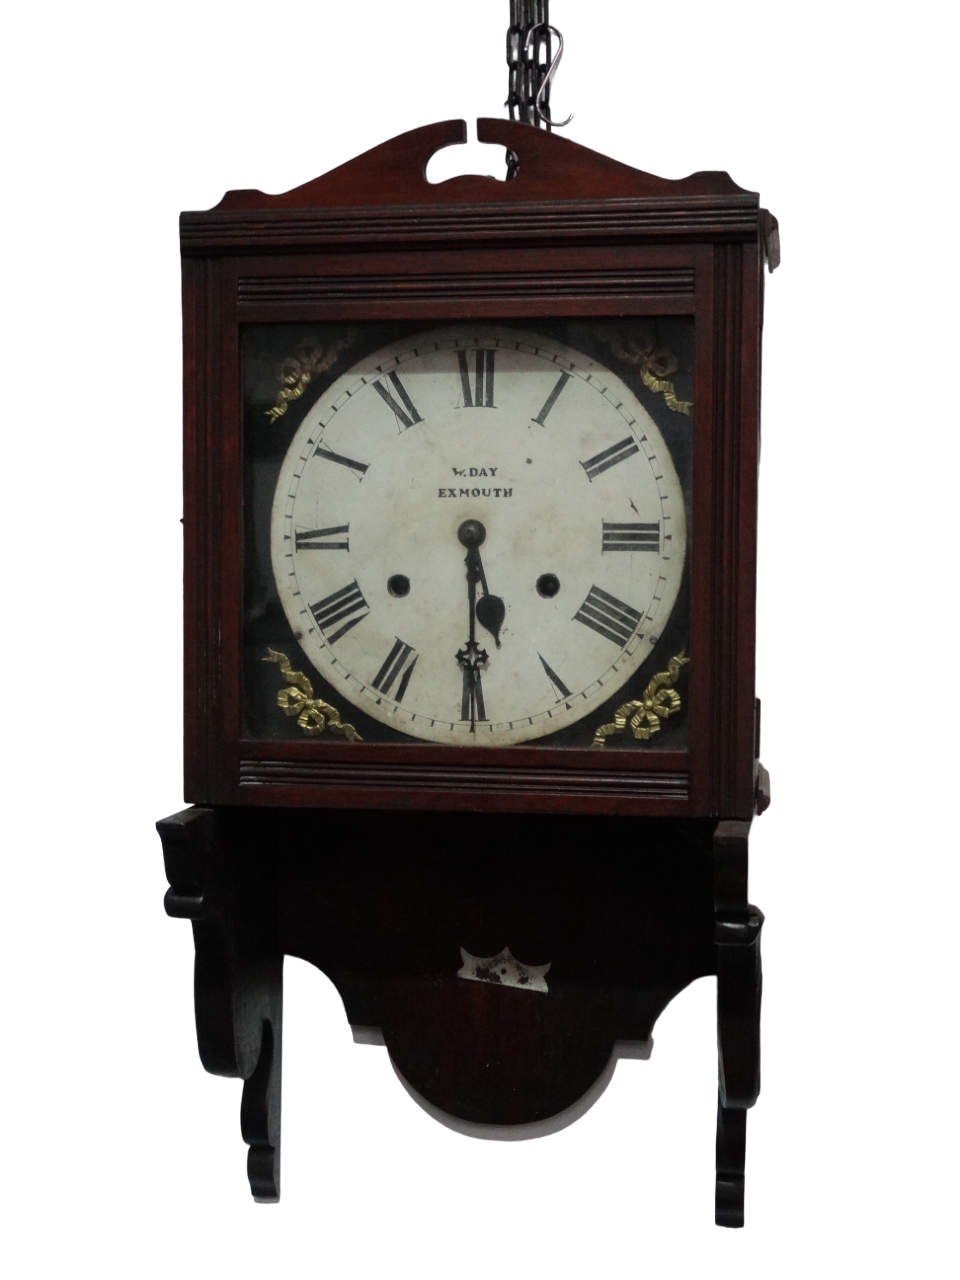 An Edwardian walnut cased bracket wall timepiece - by W Day of Exmouth, the white enamel dial set